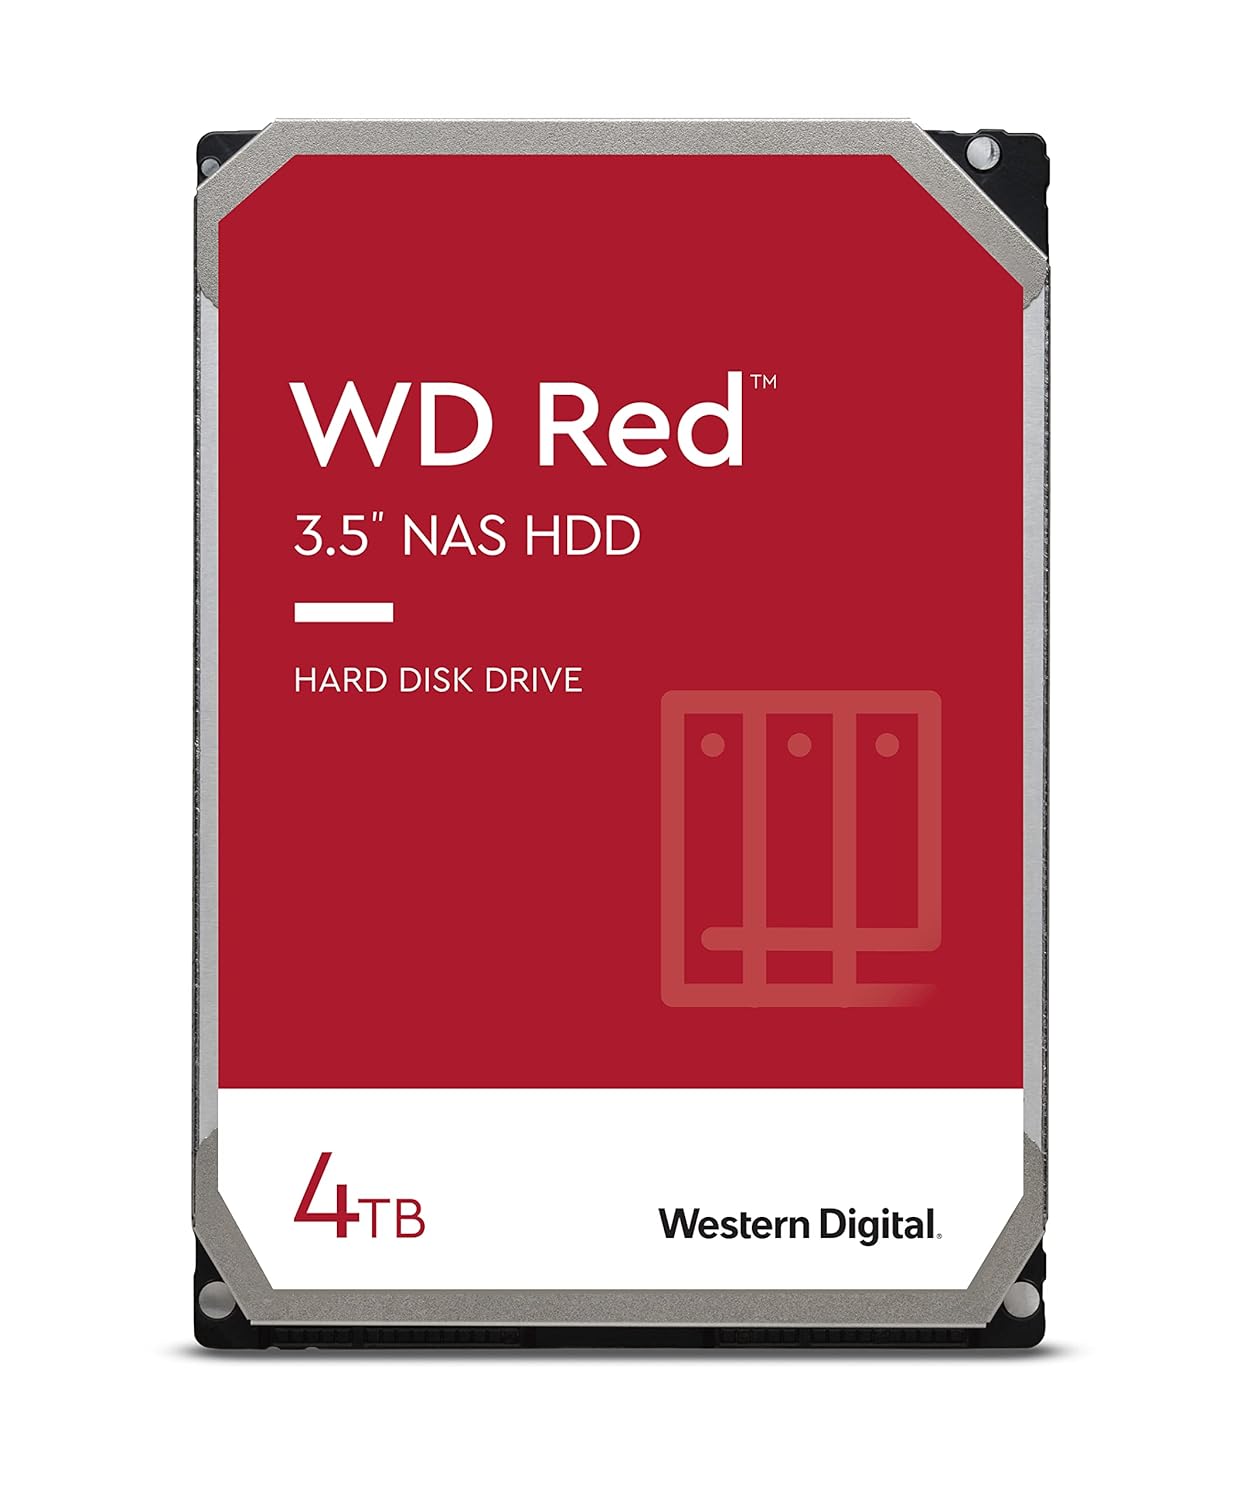 WD Red 4TB NAS Internal Hard Drive - 5400 RPM, SATA 6Gb/s, SMR